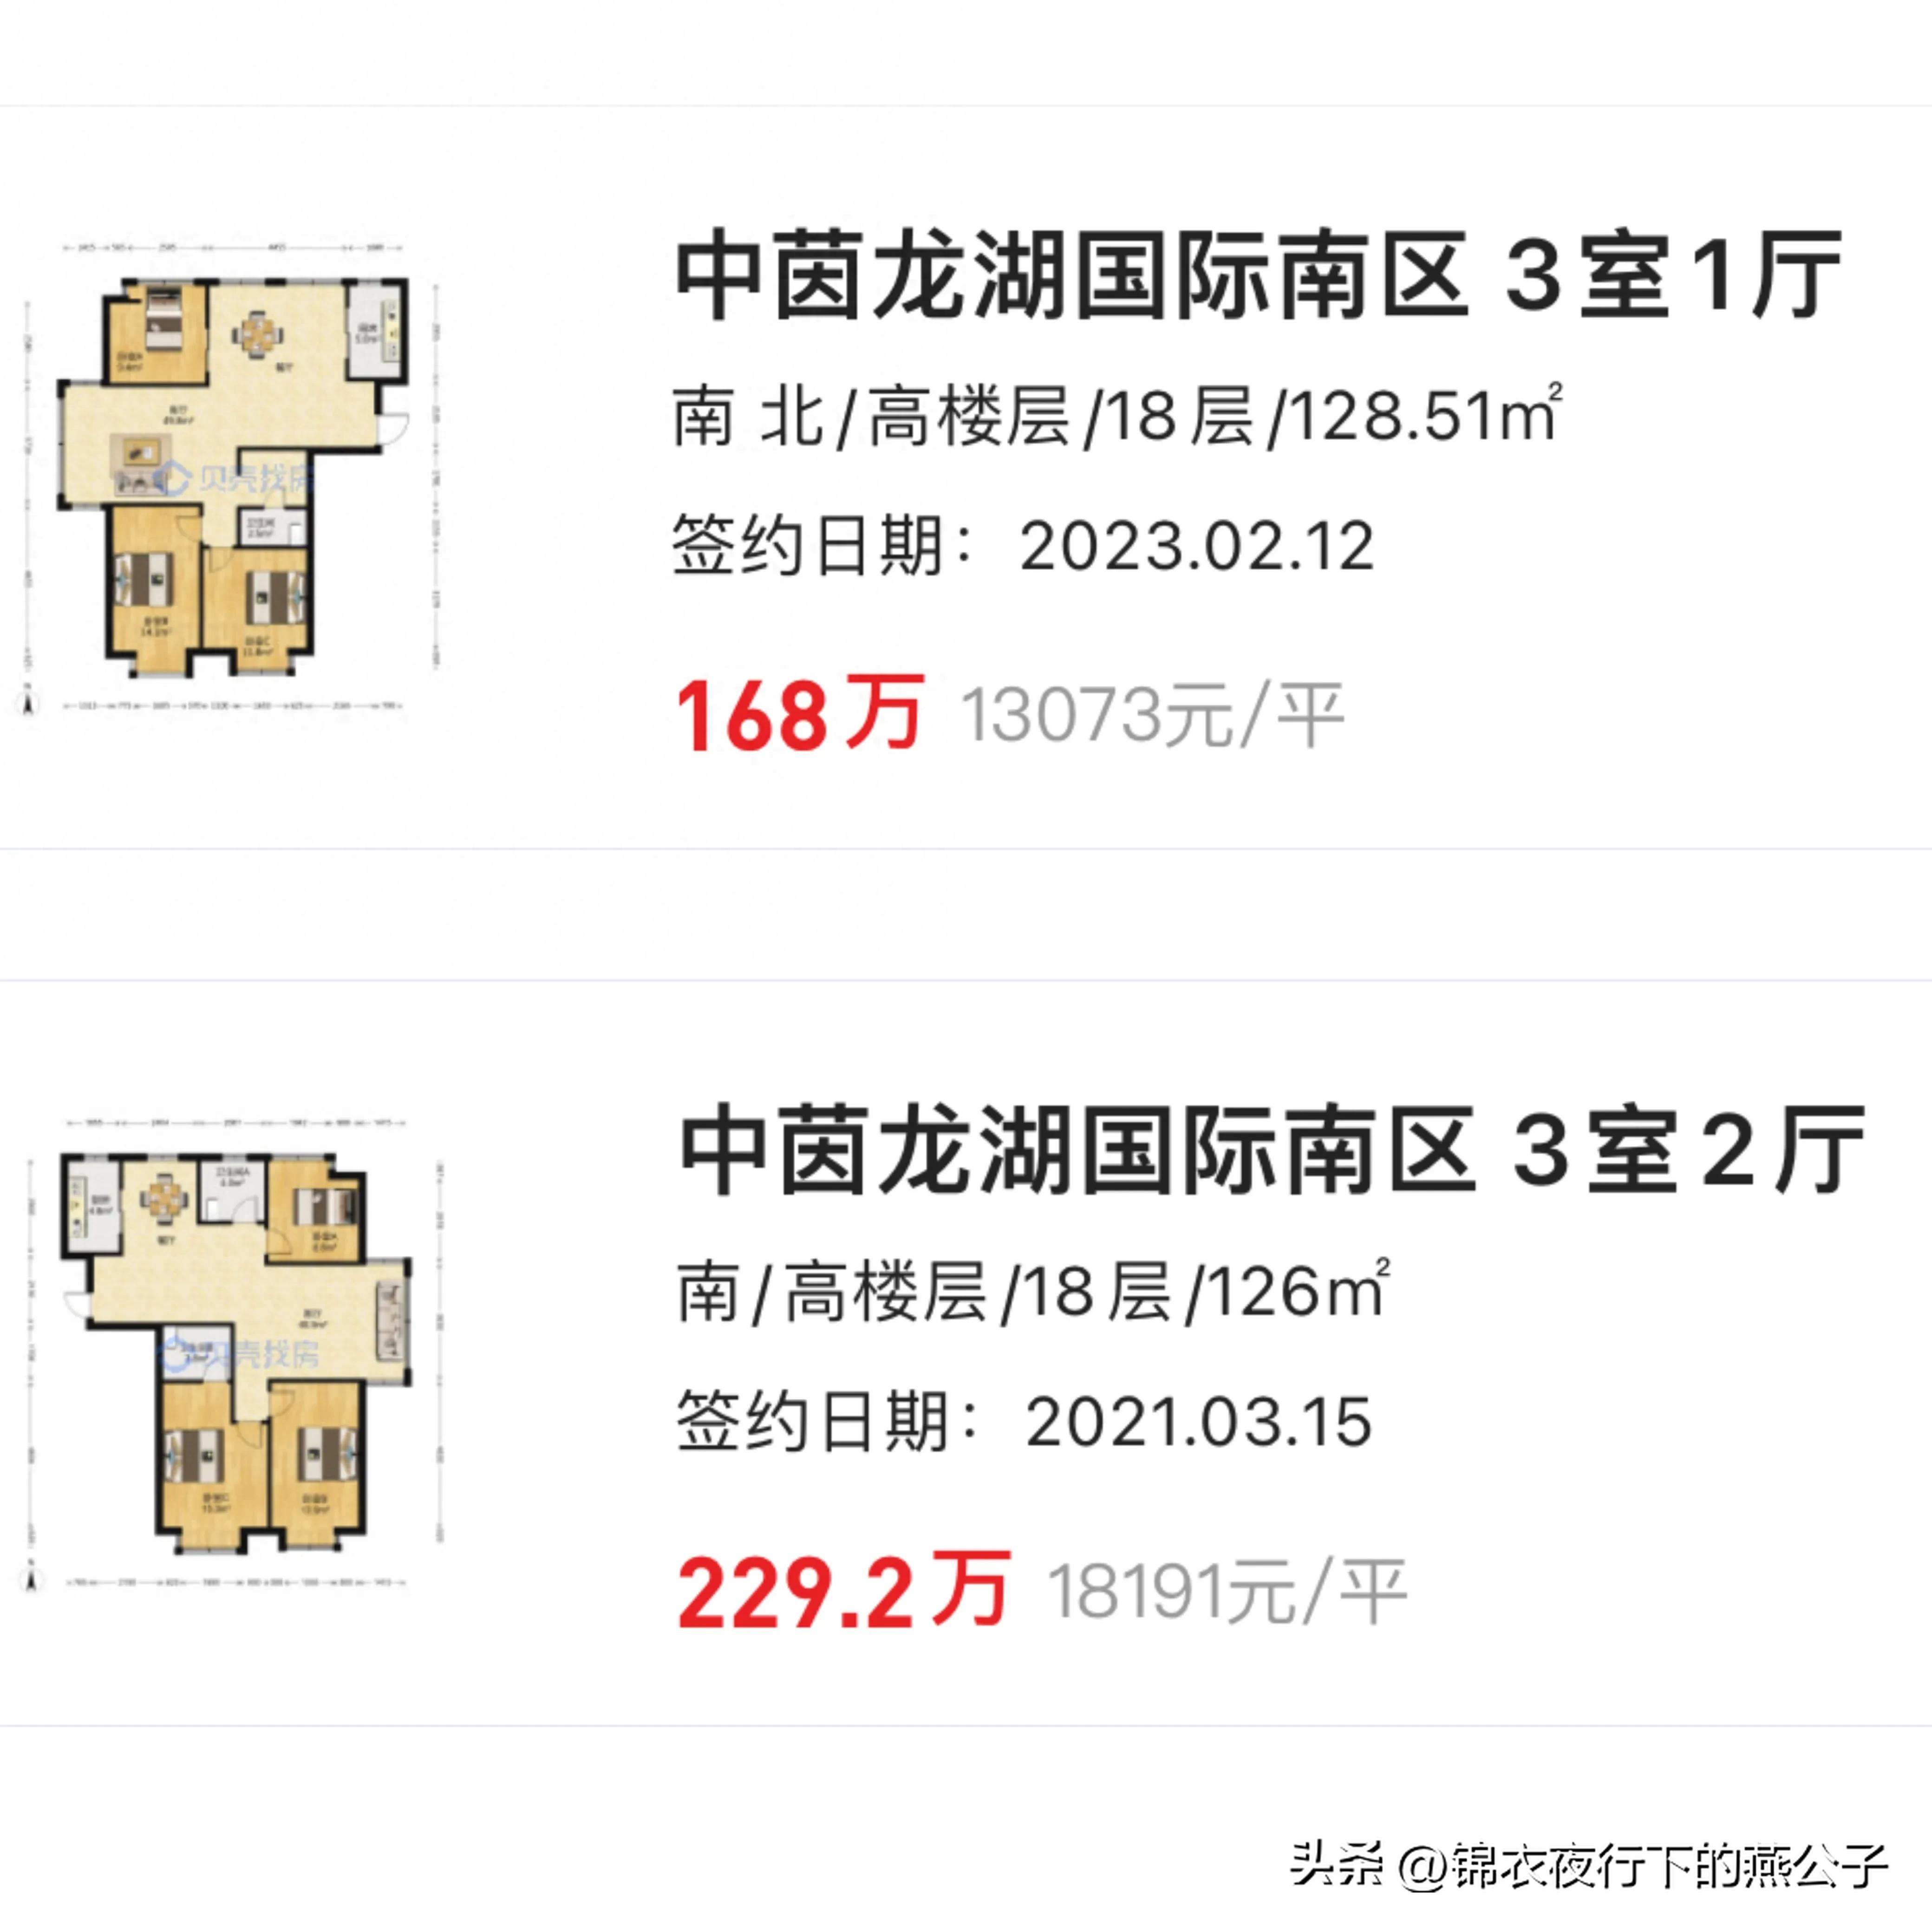 绿地世纪城二期 上海 价格_上海绿地世纪城房价多少_上海绿地世纪城一期二手房价格